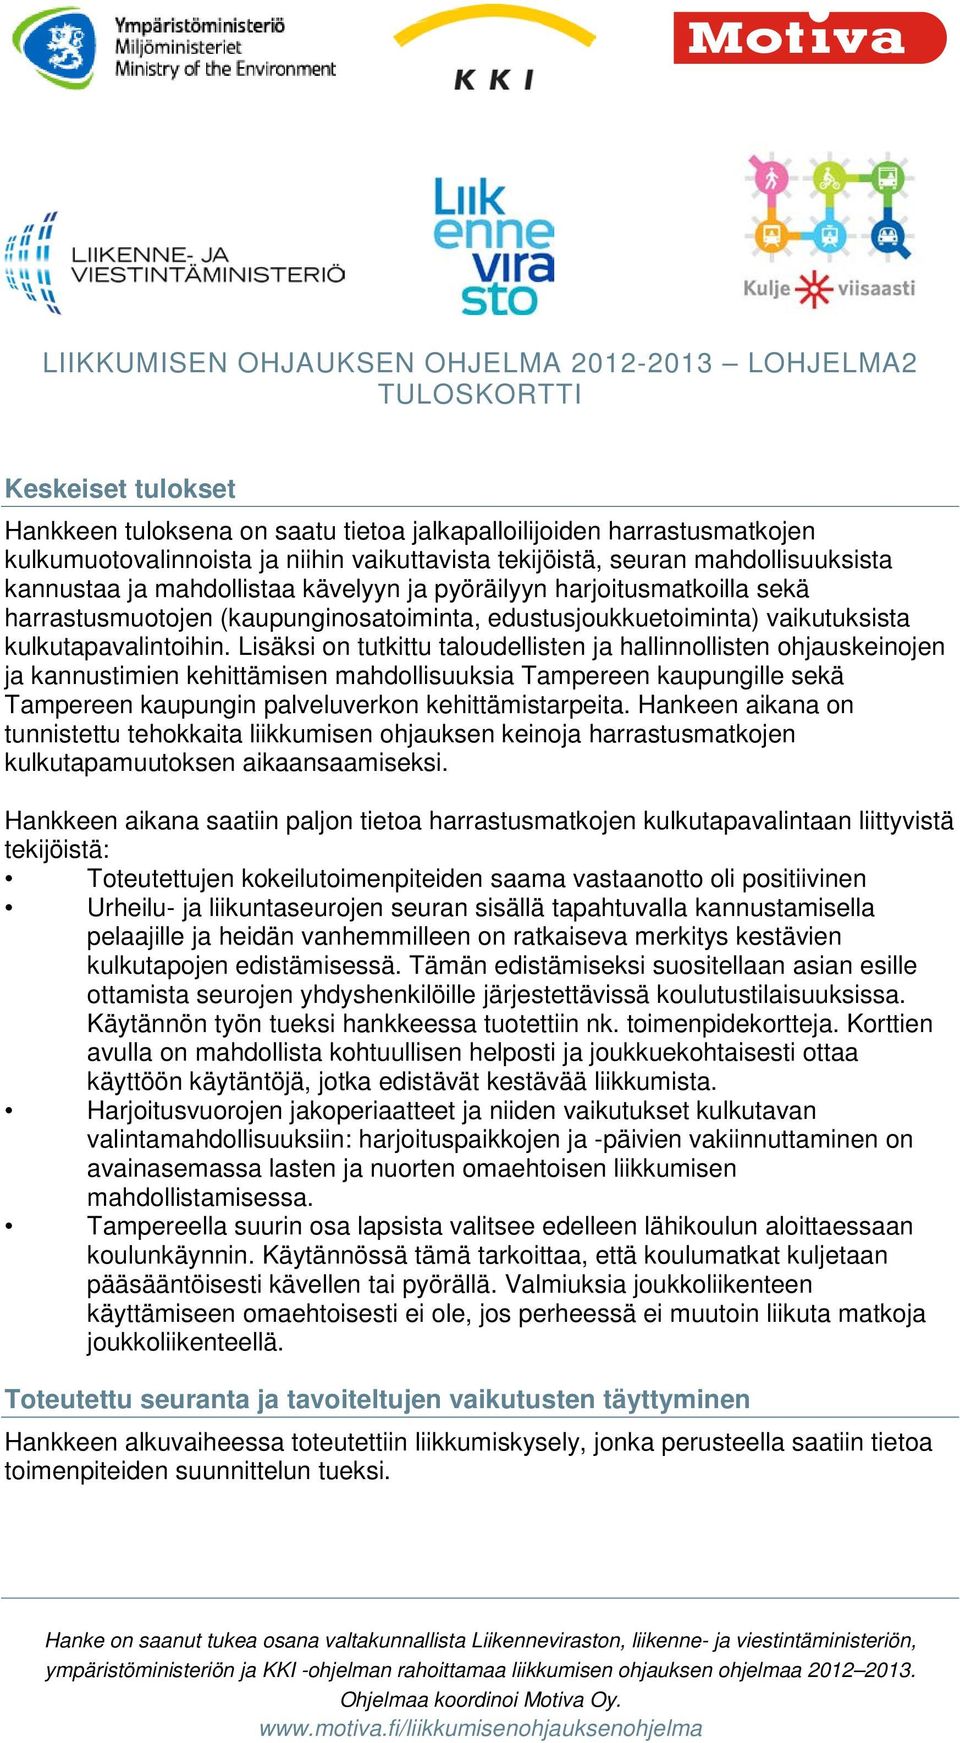 Lisäksi on tutkittu taloudellisten ja hallinnollisten ohjauskeinojen ja kannustimien kehittämisen mahdollisuuksia Tampereen kaupungille sekä Tampereen kaupungin palveluverkon kehittämistarpeita.